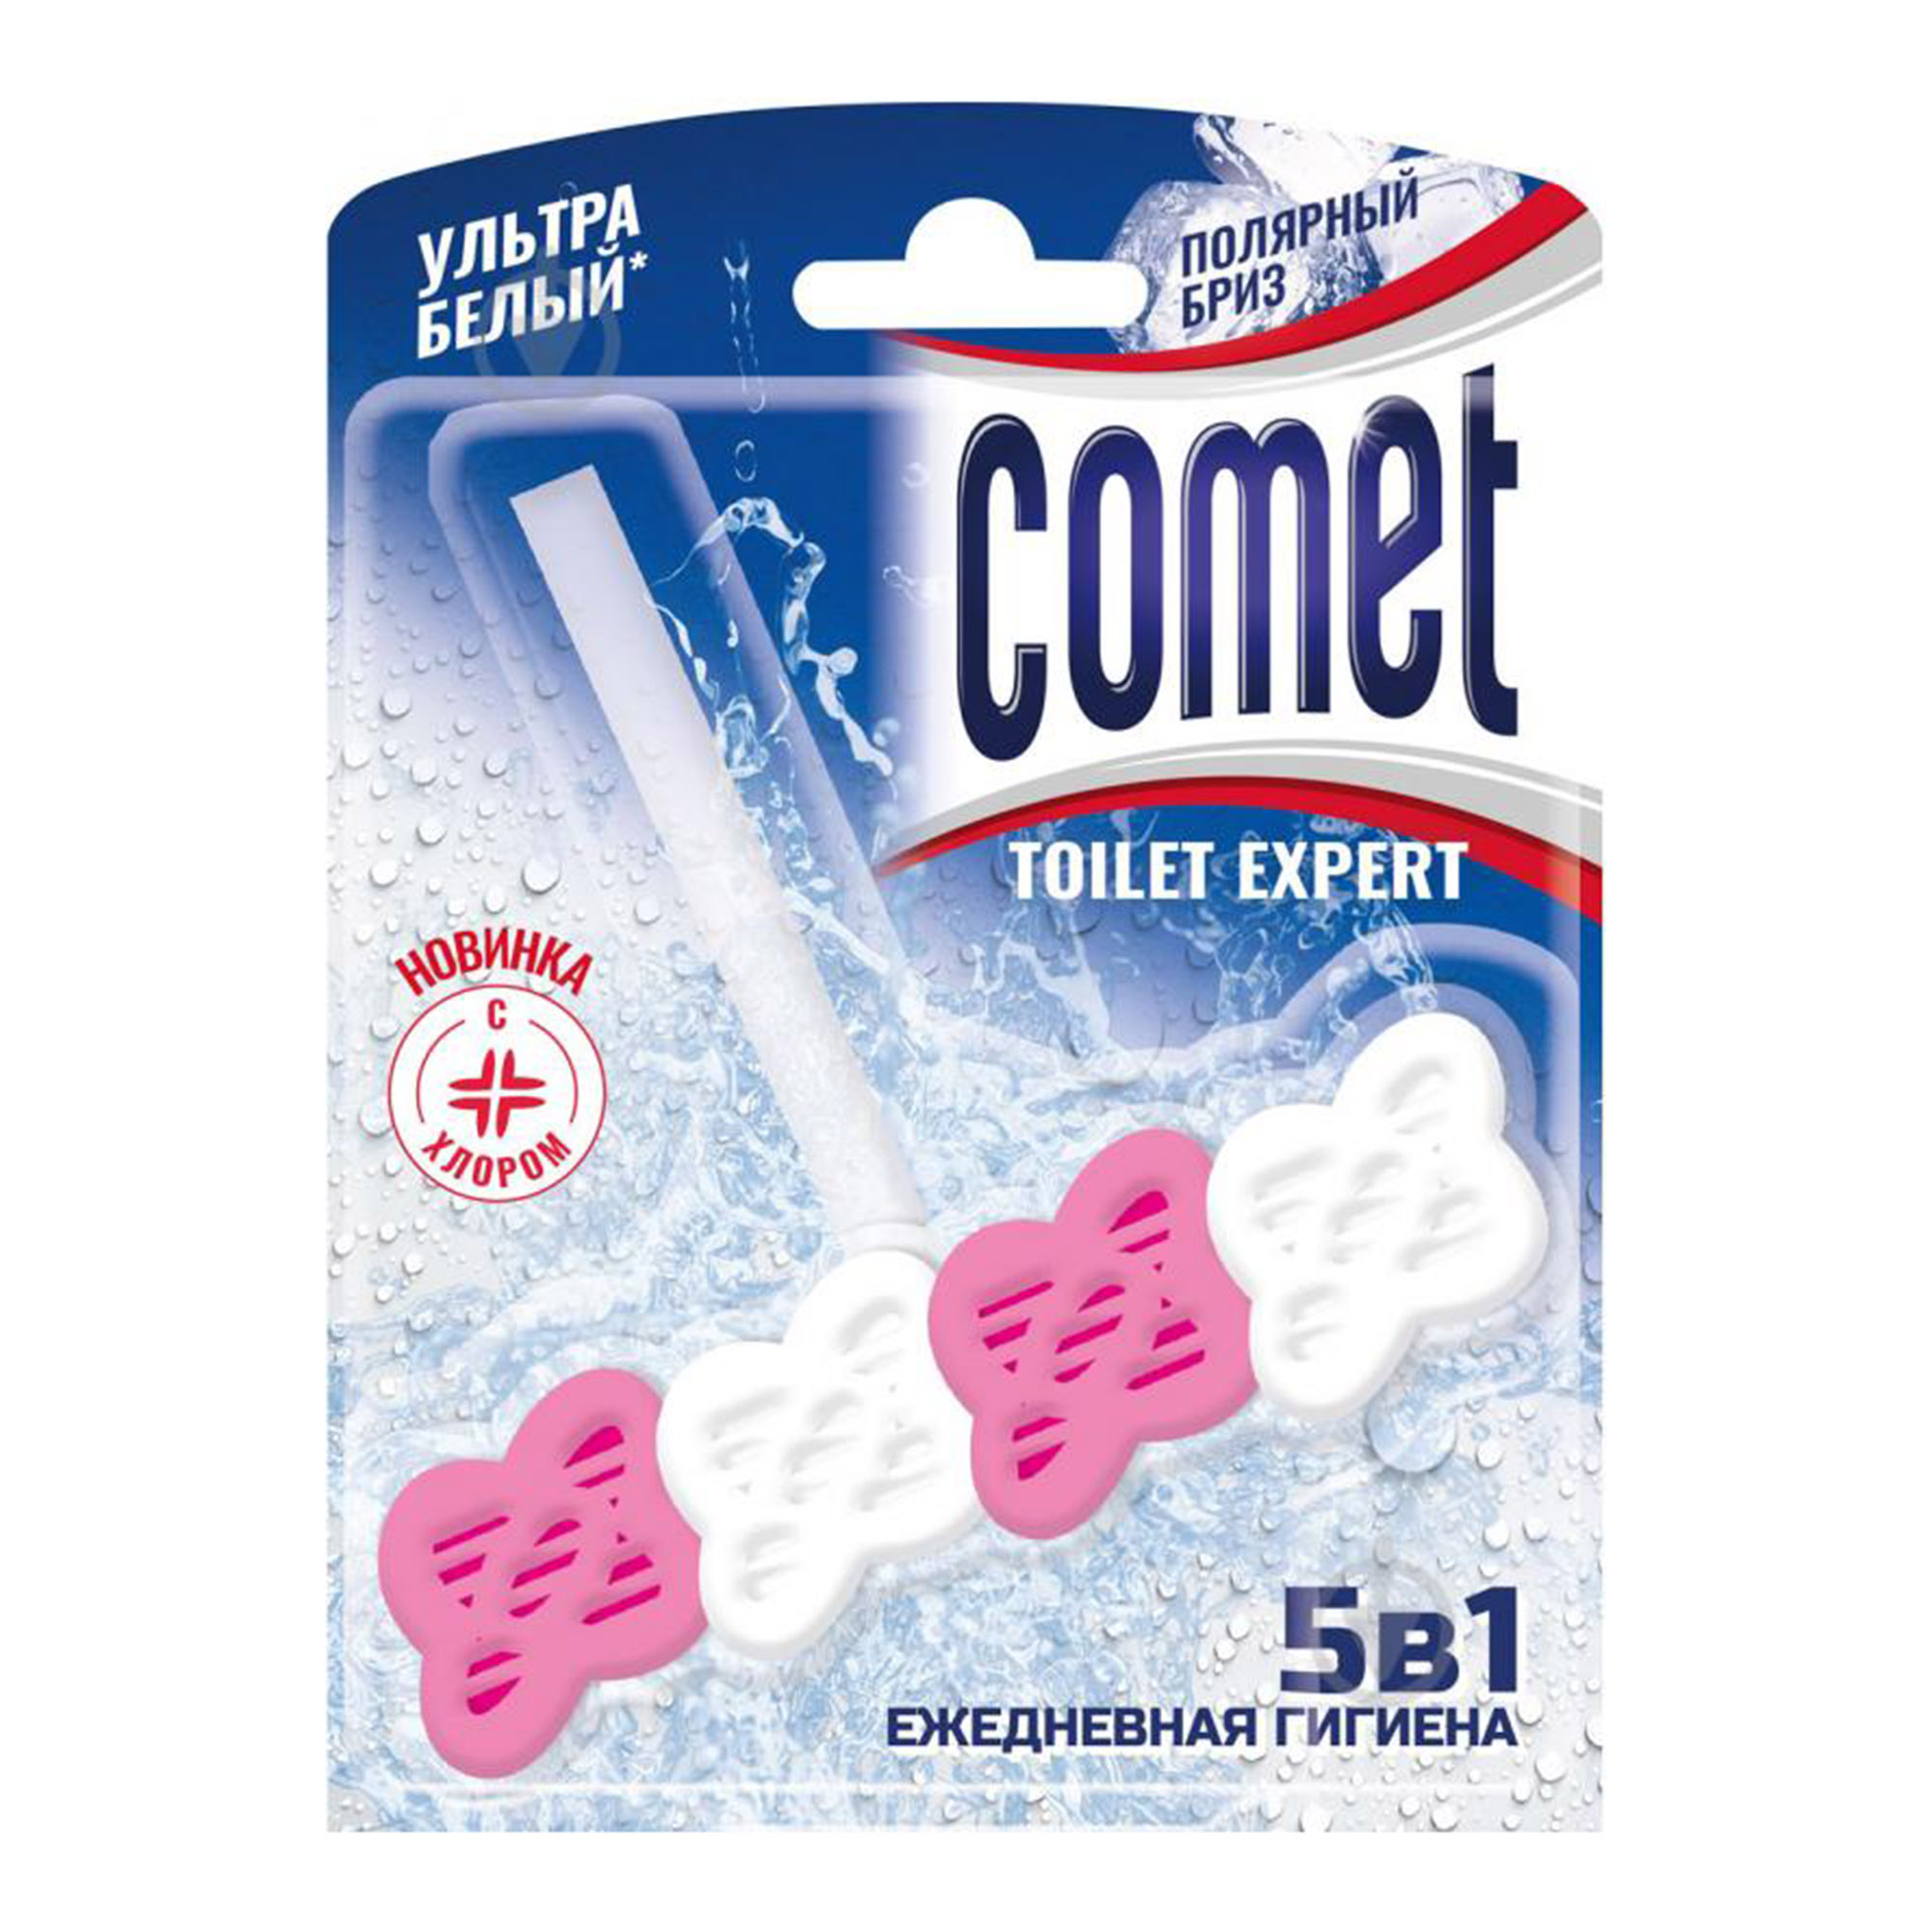 Туалетный блок Comet Полярный бриз 48 г